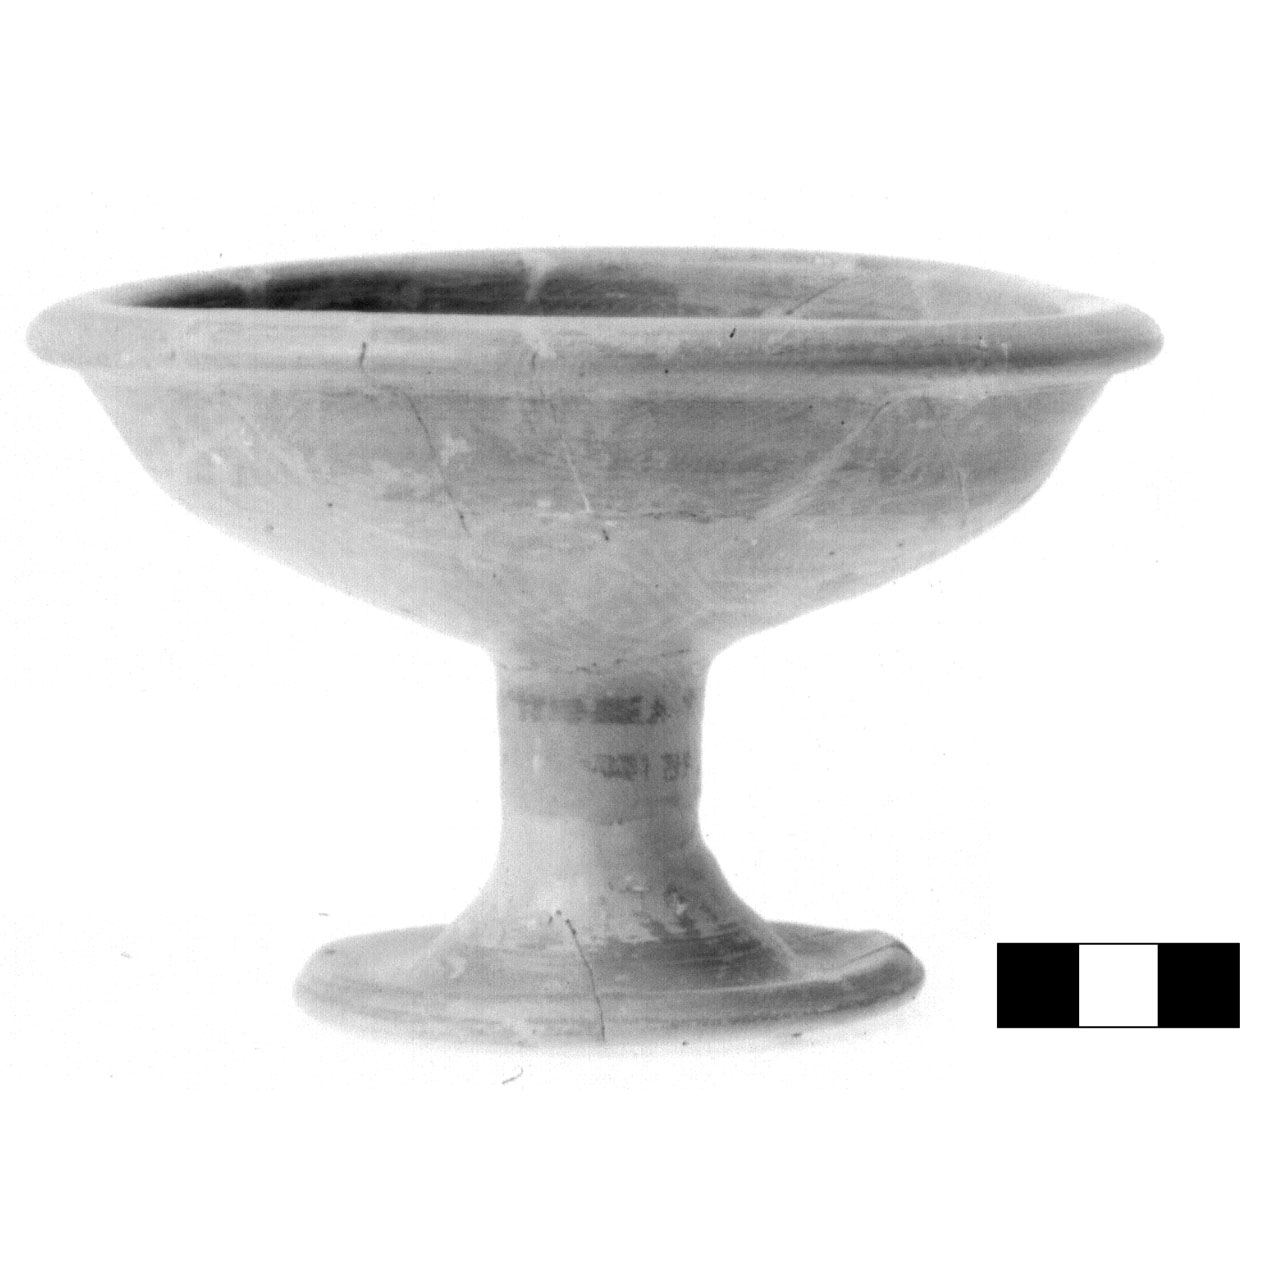 coppetta su alto piede - produzione etrusca (sec. VI a.C)